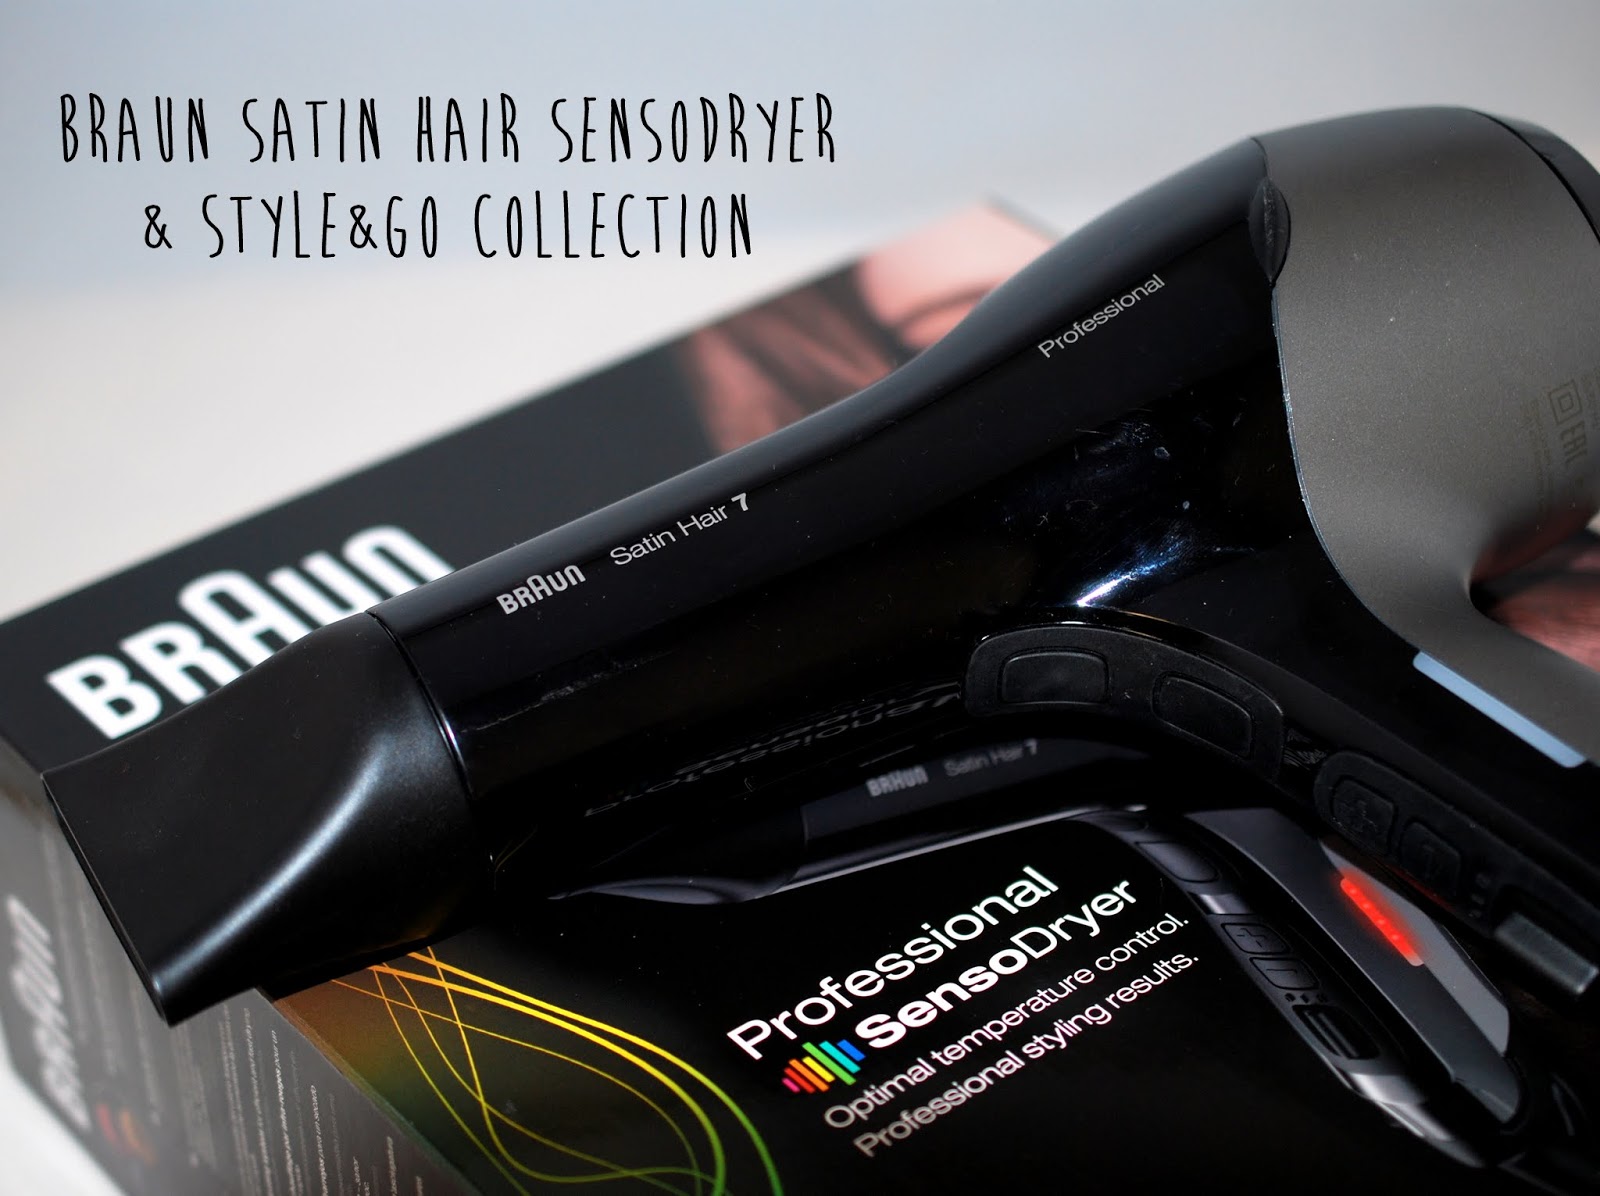 Haarpflege} Collection Style&Go I und sunshine Professional 7 SensoDryer Braun Hair (Sponsored) von Satin need -